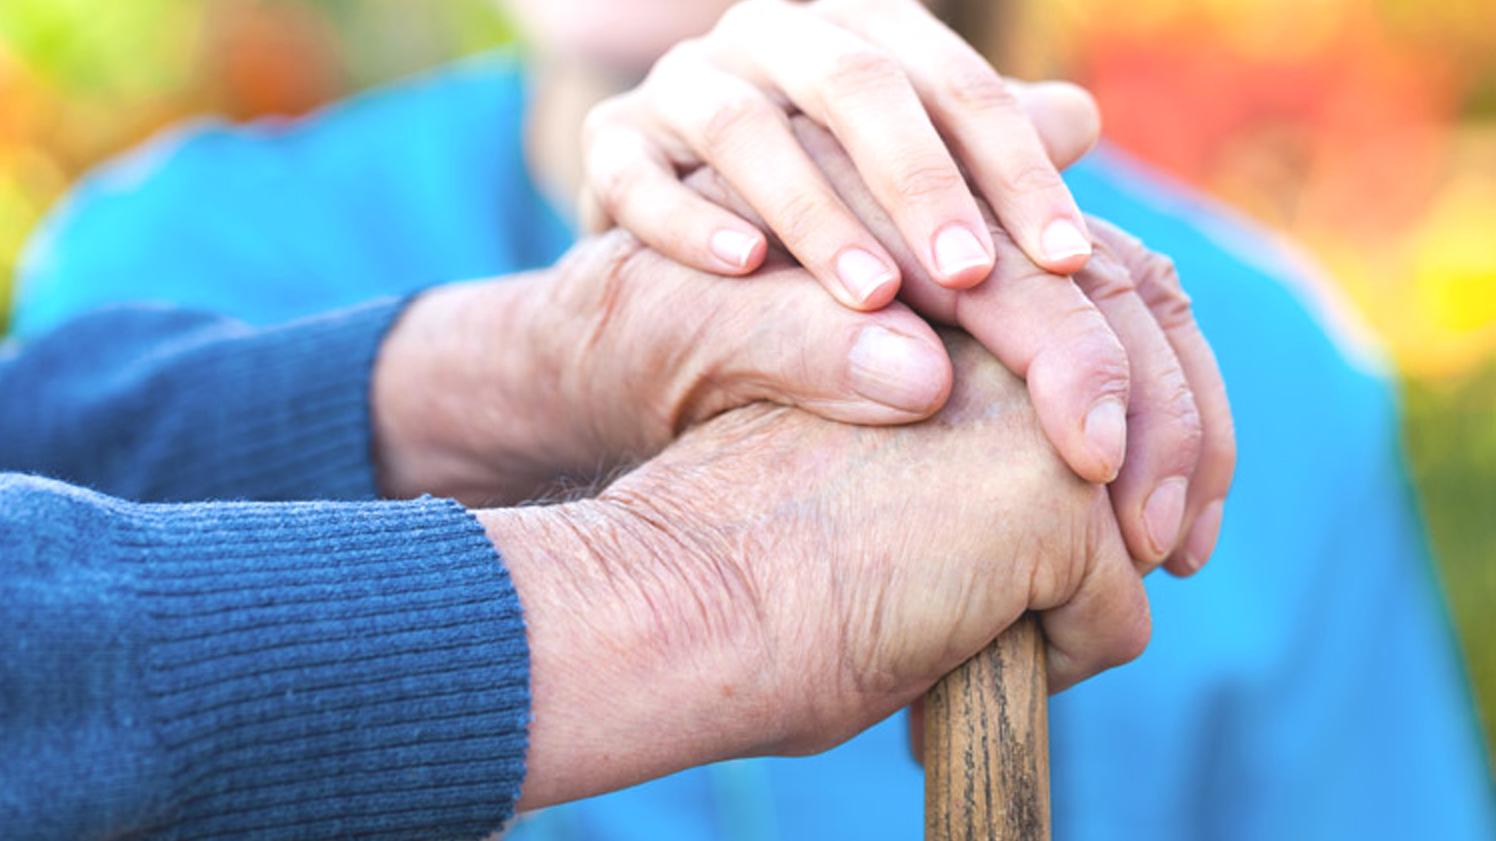 Прямая социальная поддержка. Благотворительность для пожилых людей. Пожилые люди добро. Протяни руку помощи пожилым. Волонтеры и старики.